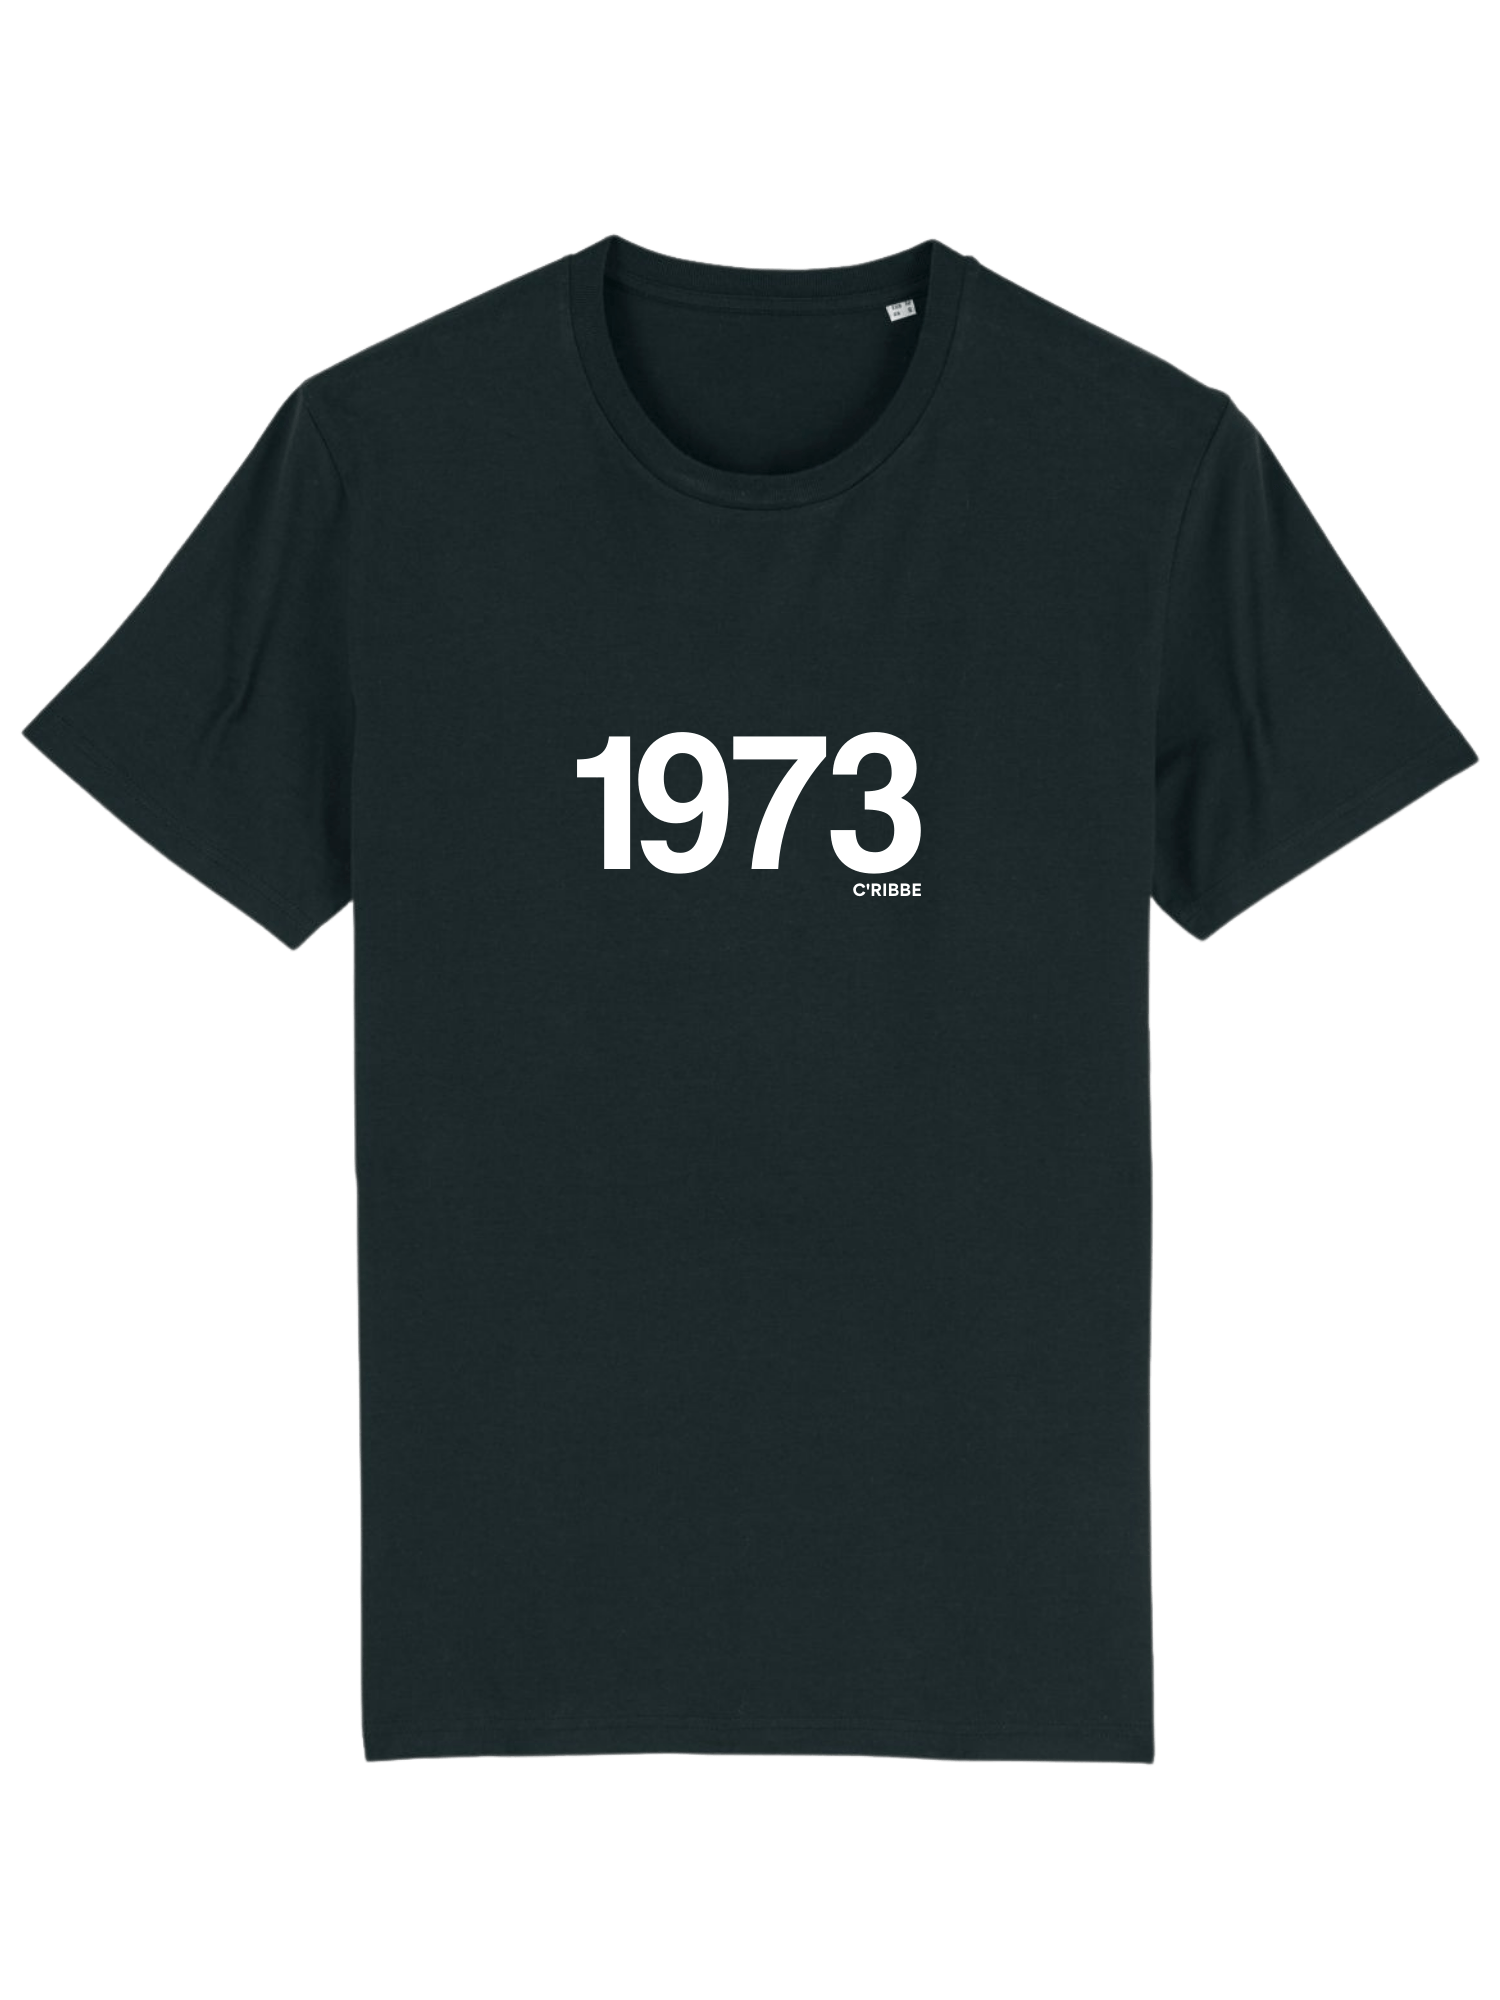 The Bahamas Independence 1973 Unisex Crew Neck T-Shirt Atlantic Blue